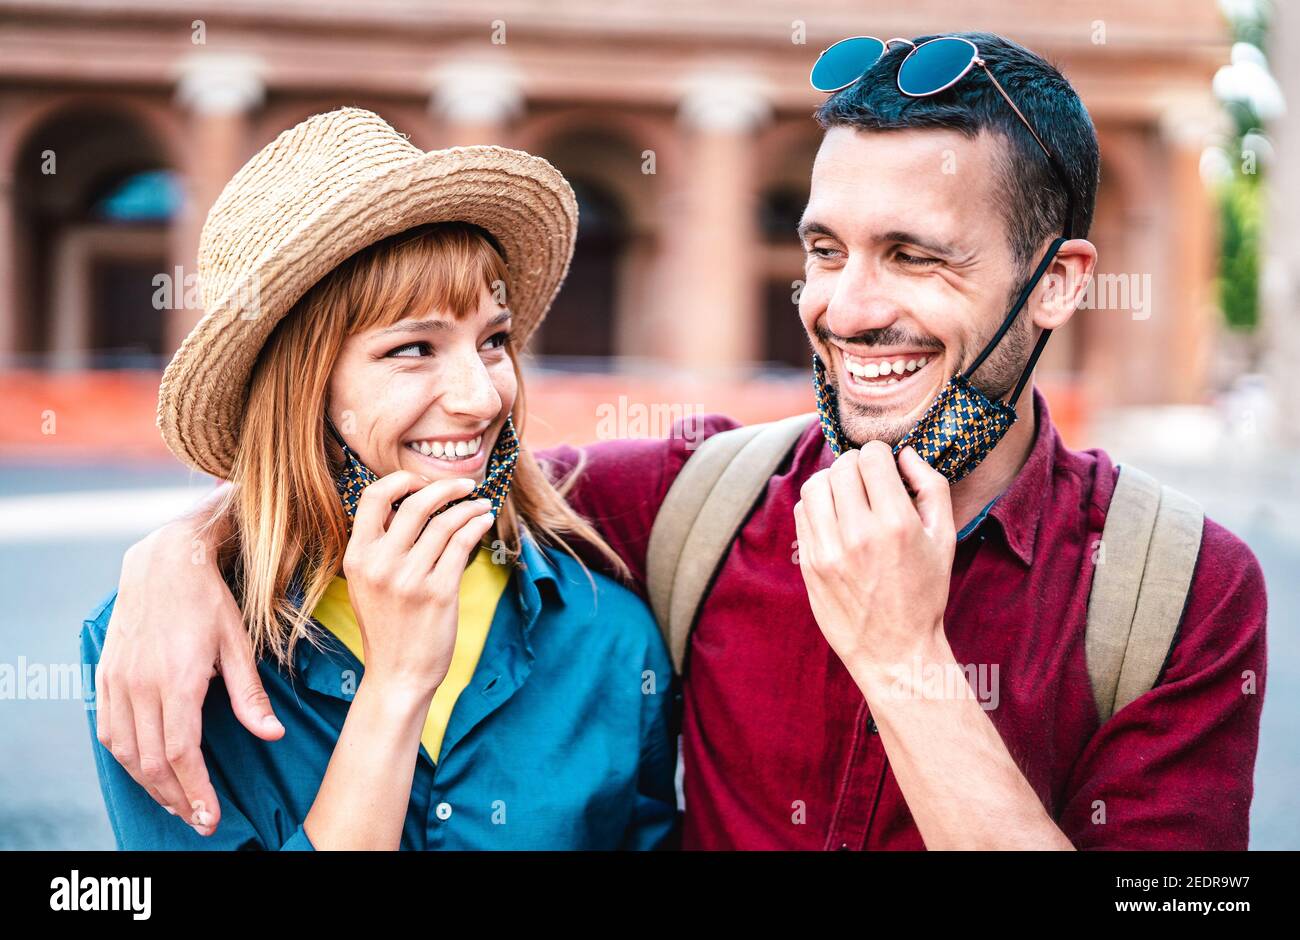 Glückliches Reisepaar lächelnd mit offener Gesichtsmaske - Neu Normales Lifestyle-Konzept mit jungen Menschen auf positive Stimmung nach Wiederöffnung der Sperre Stockfoto